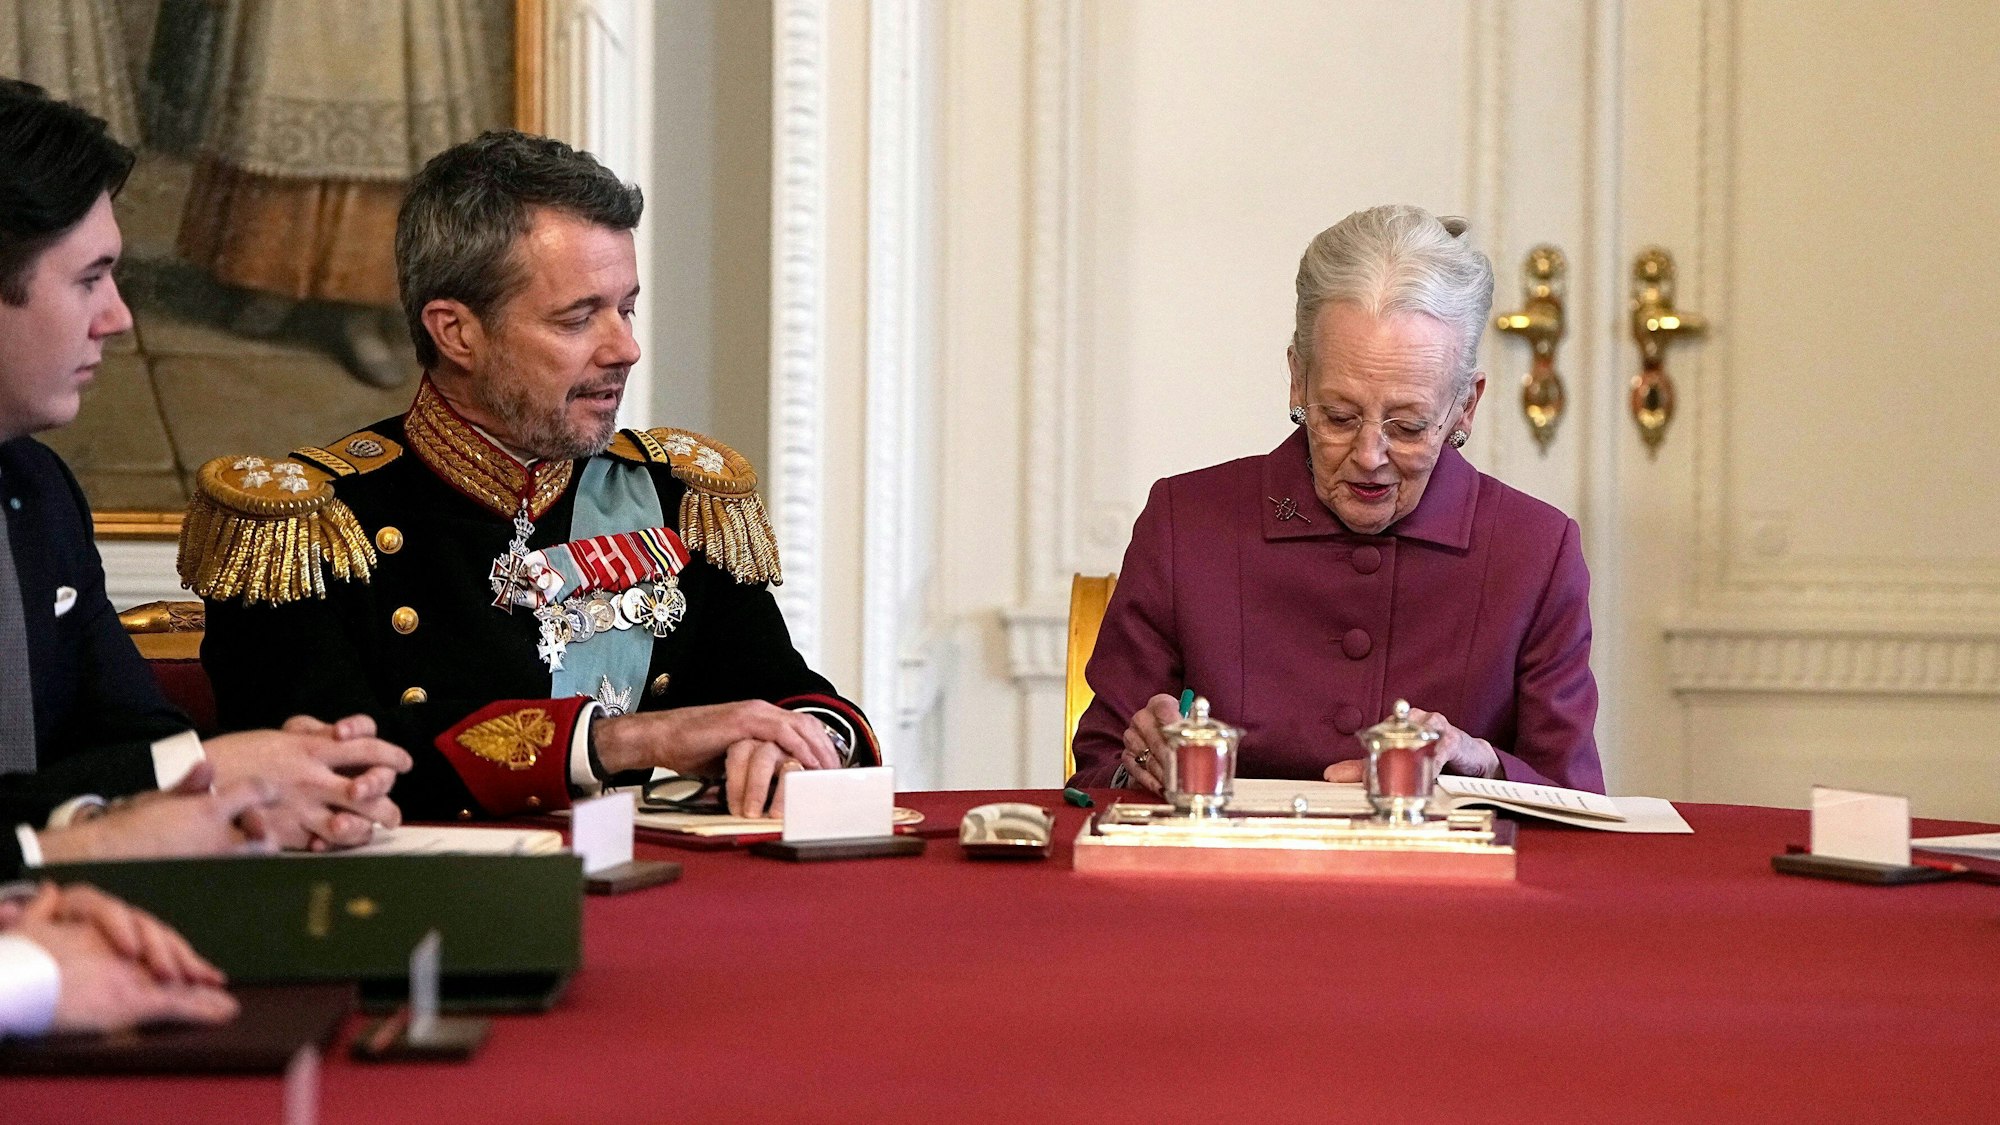 Königin Margrethe II. von Dänemark unterzeichnet im Staatsrat von Schloss Christiansborg die Abdankungserklärung.